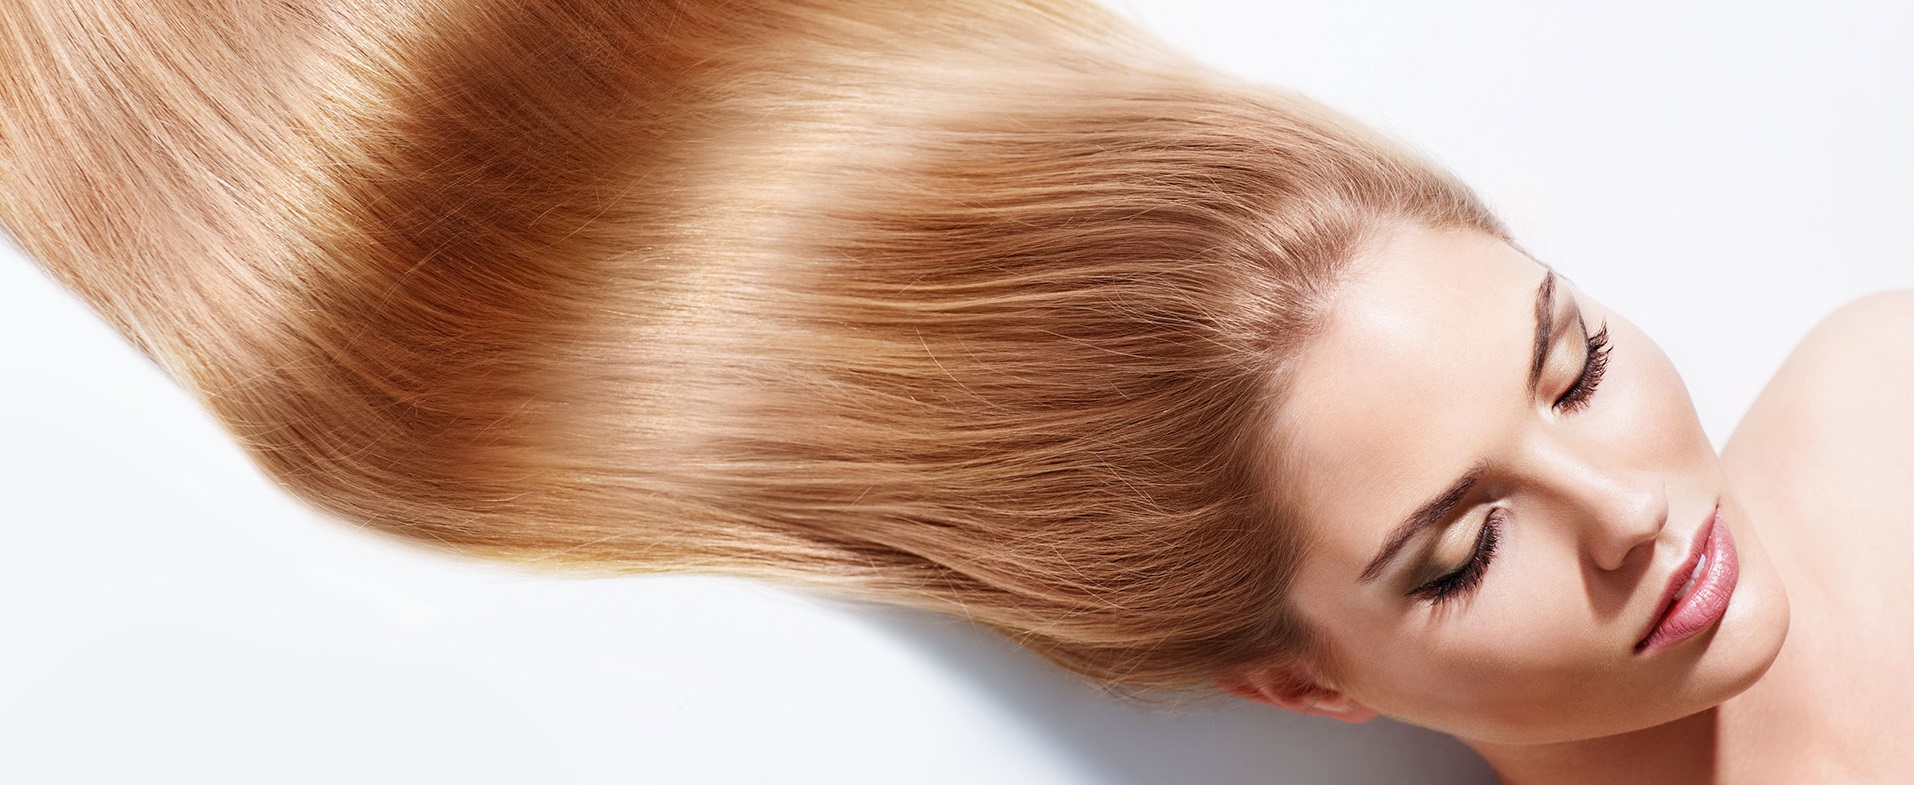 Шампунь для окрашенных волос - выбирай правильно Kosmetika-proff.ru